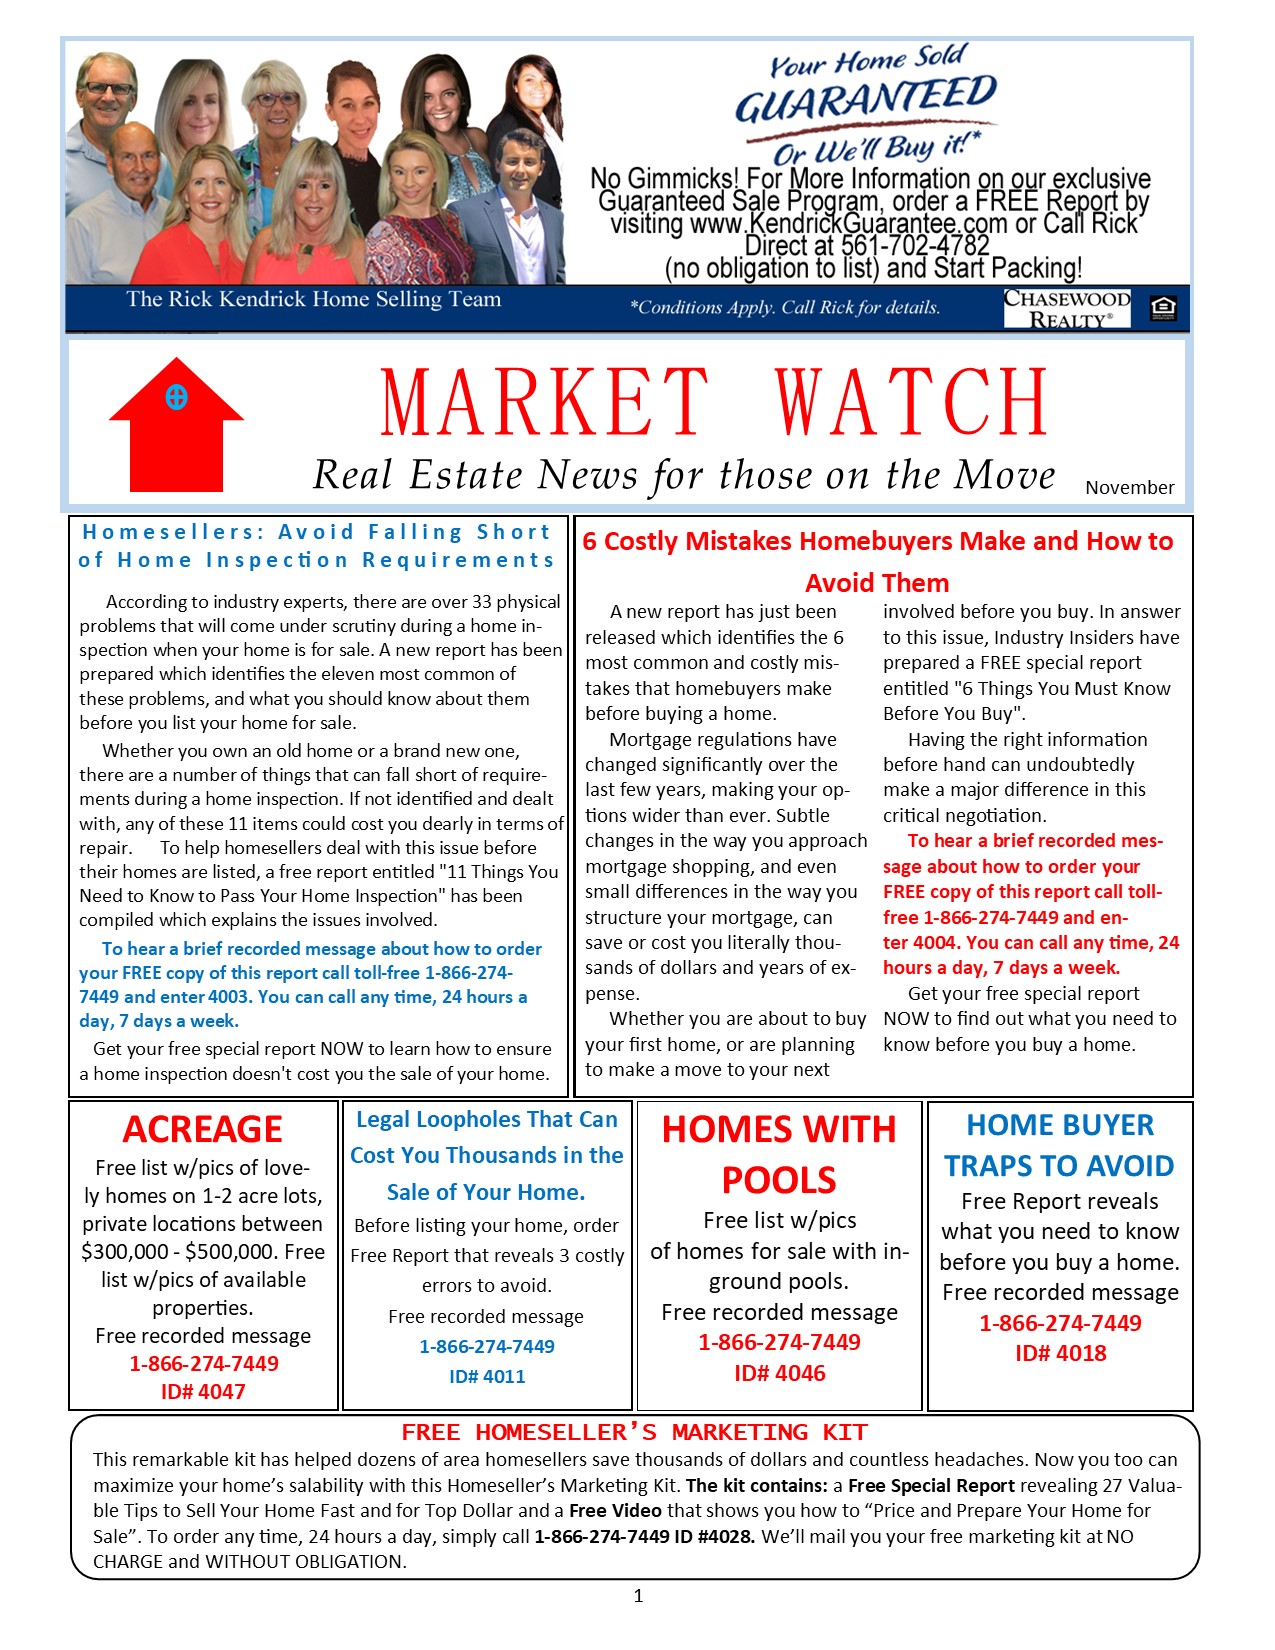 MarketWatch Newsletter November 2020.jpg